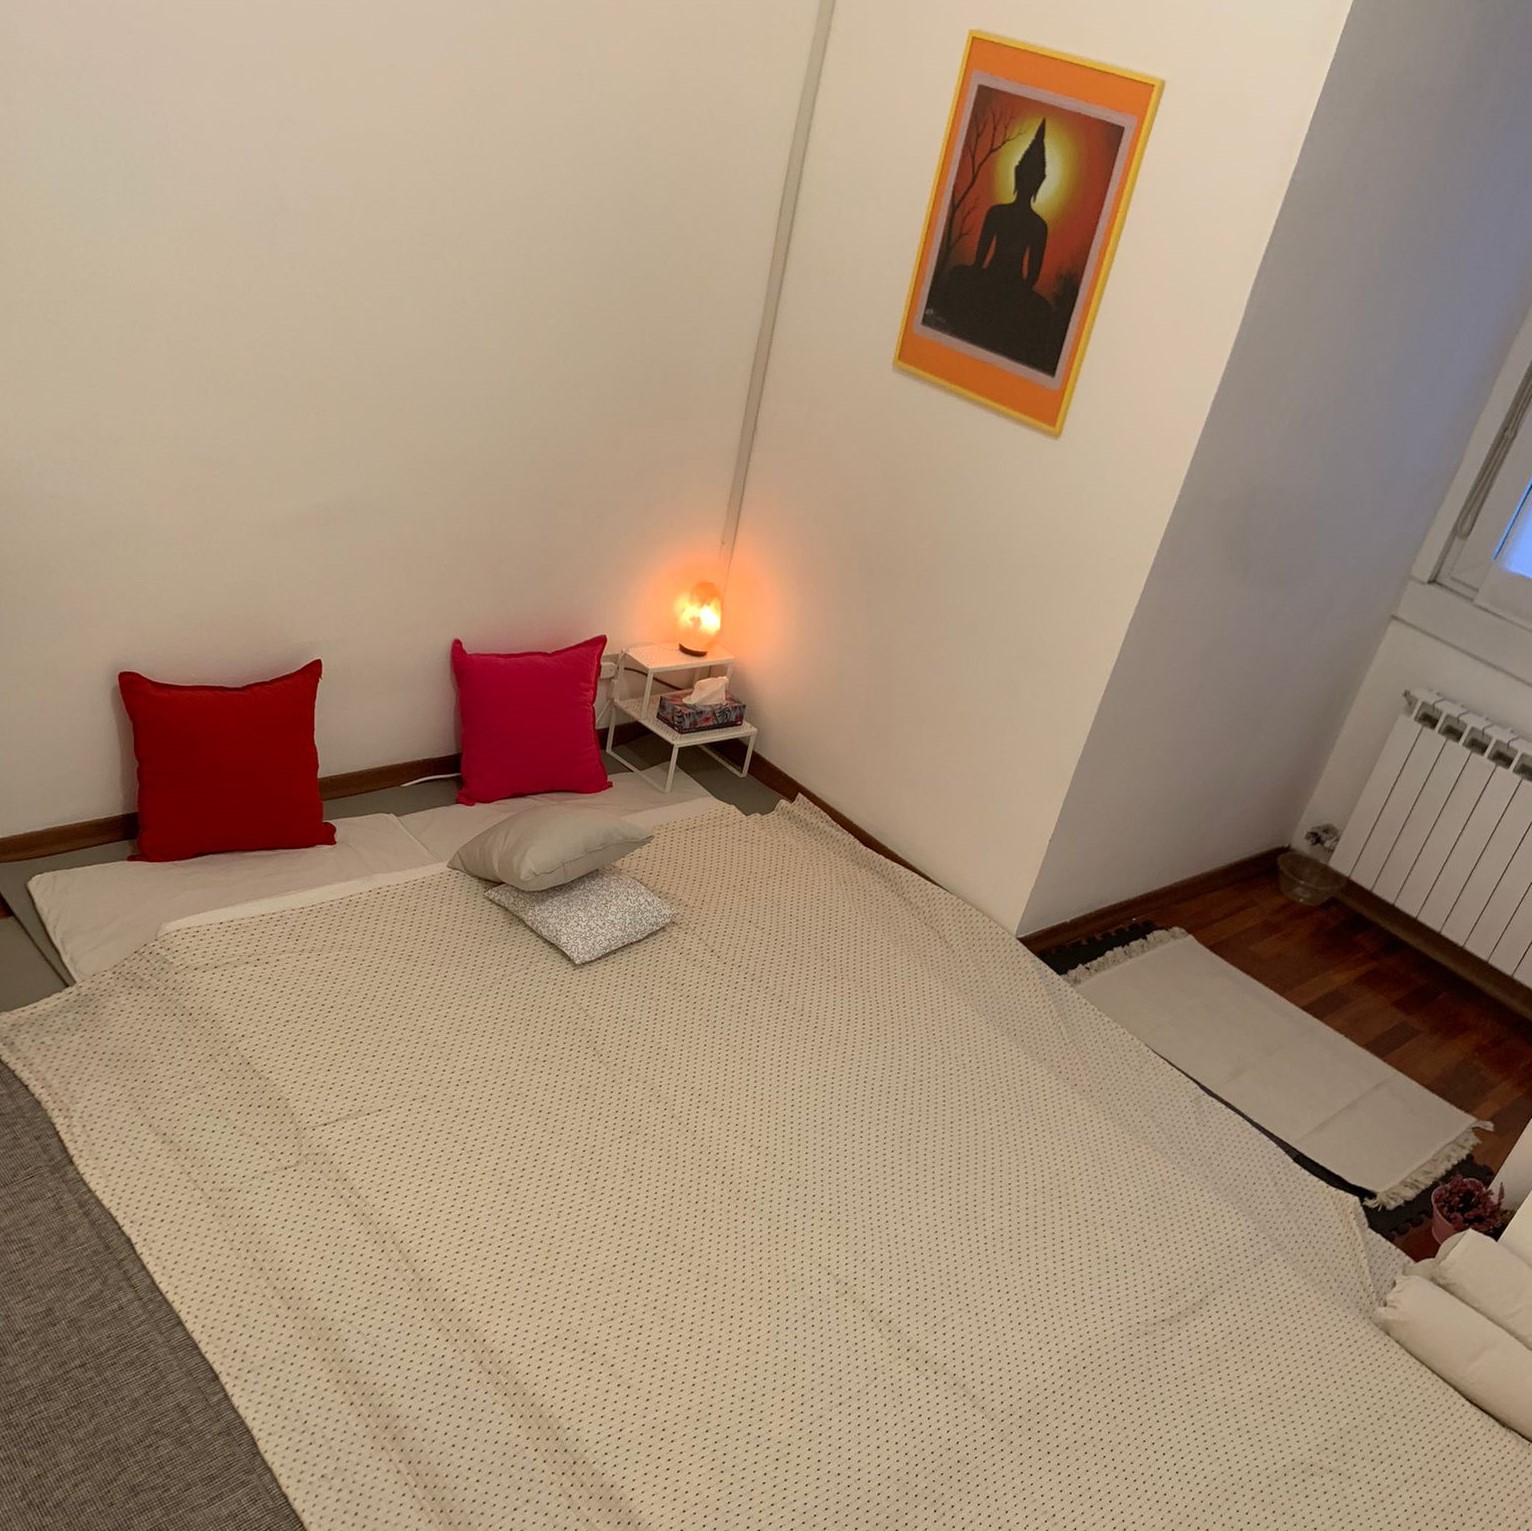 immagine dello studio e del futon, con luce diffusa in un'atmosfera rilassante